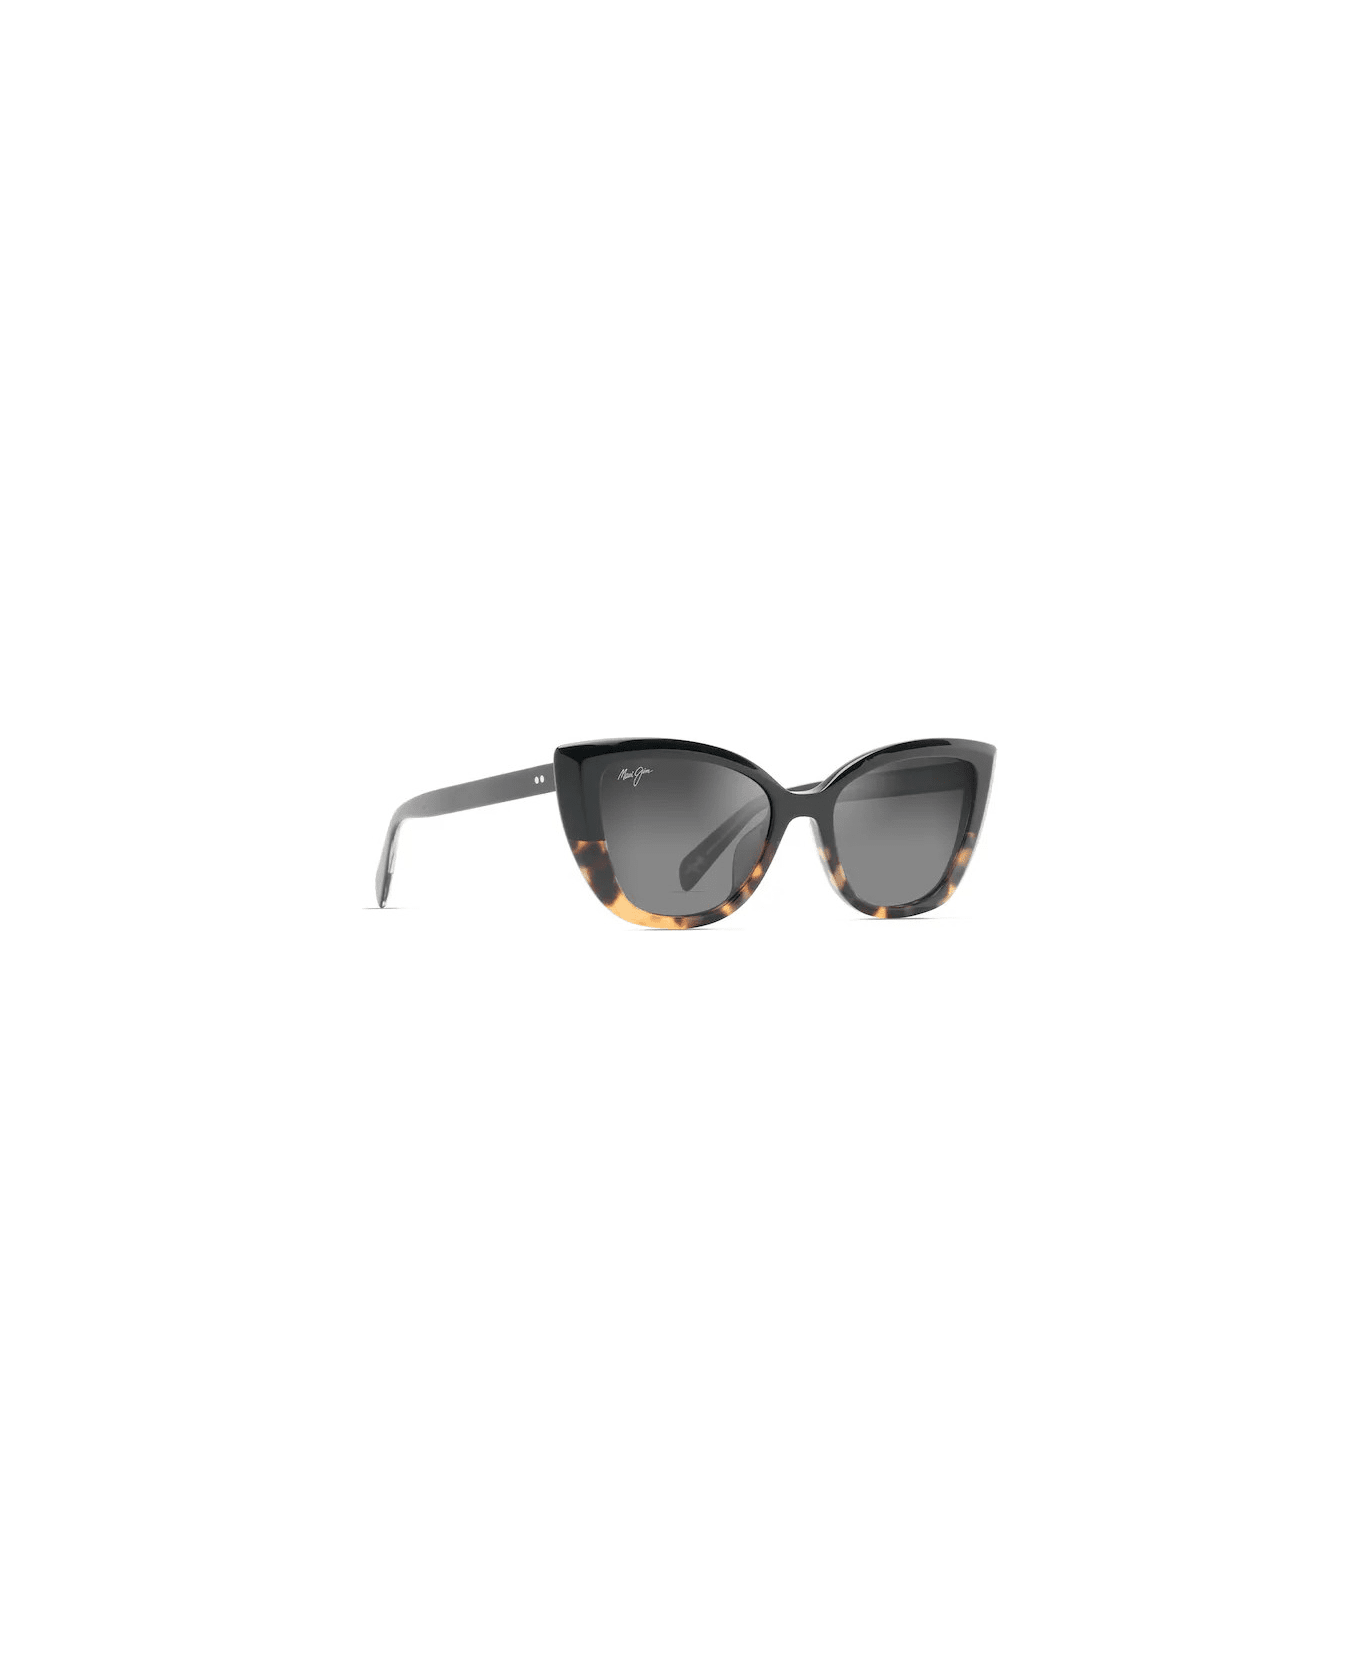 Maui Jim Blossom 02 Sunglasses サングラス